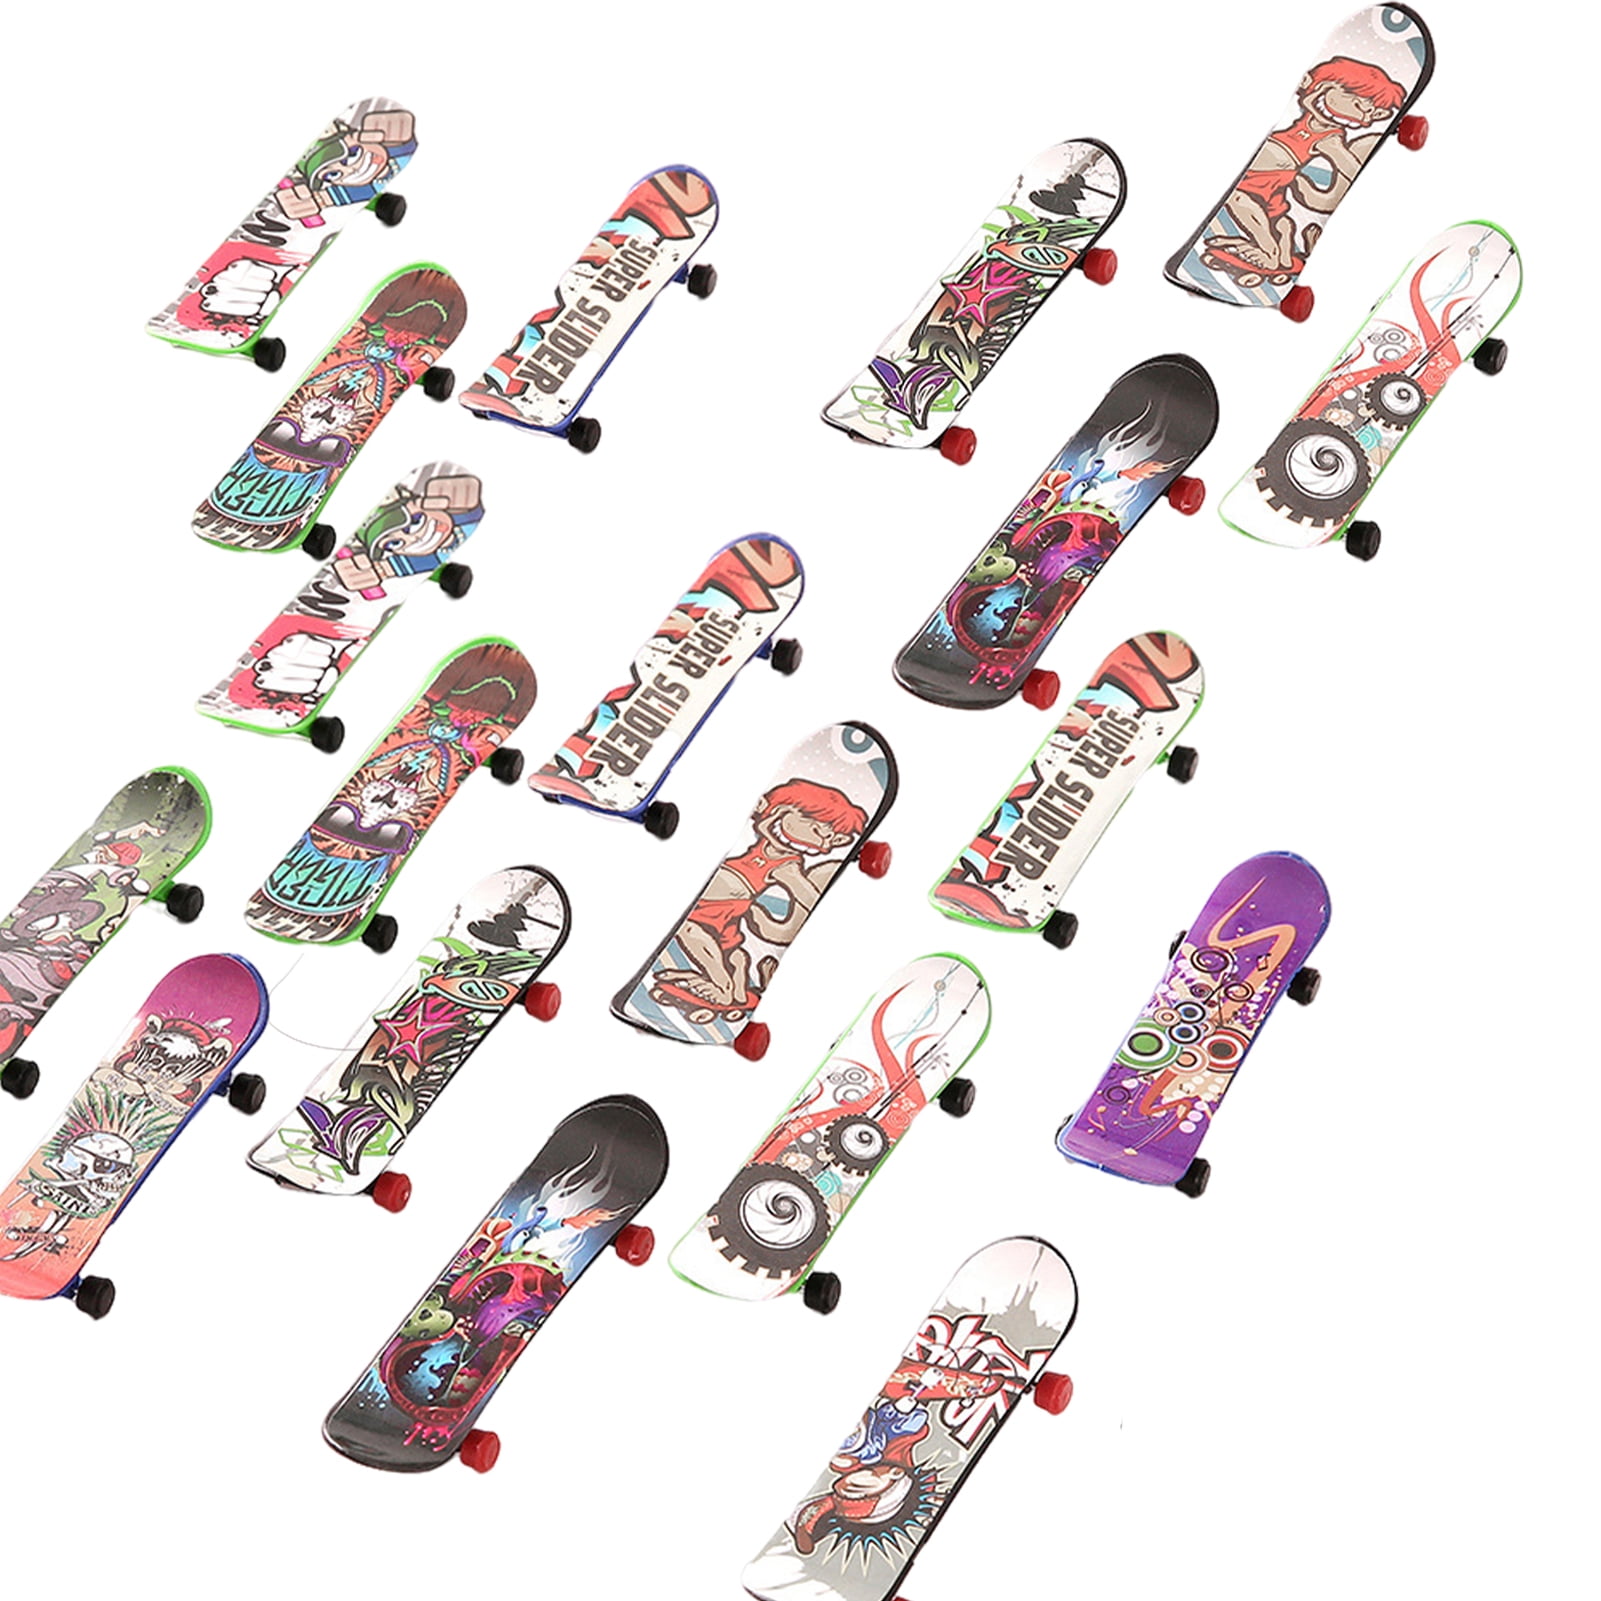 1 Pcs Random Mini Plastic Tech Deck Skate Finger Board Skateboards Toy Gift Kids 